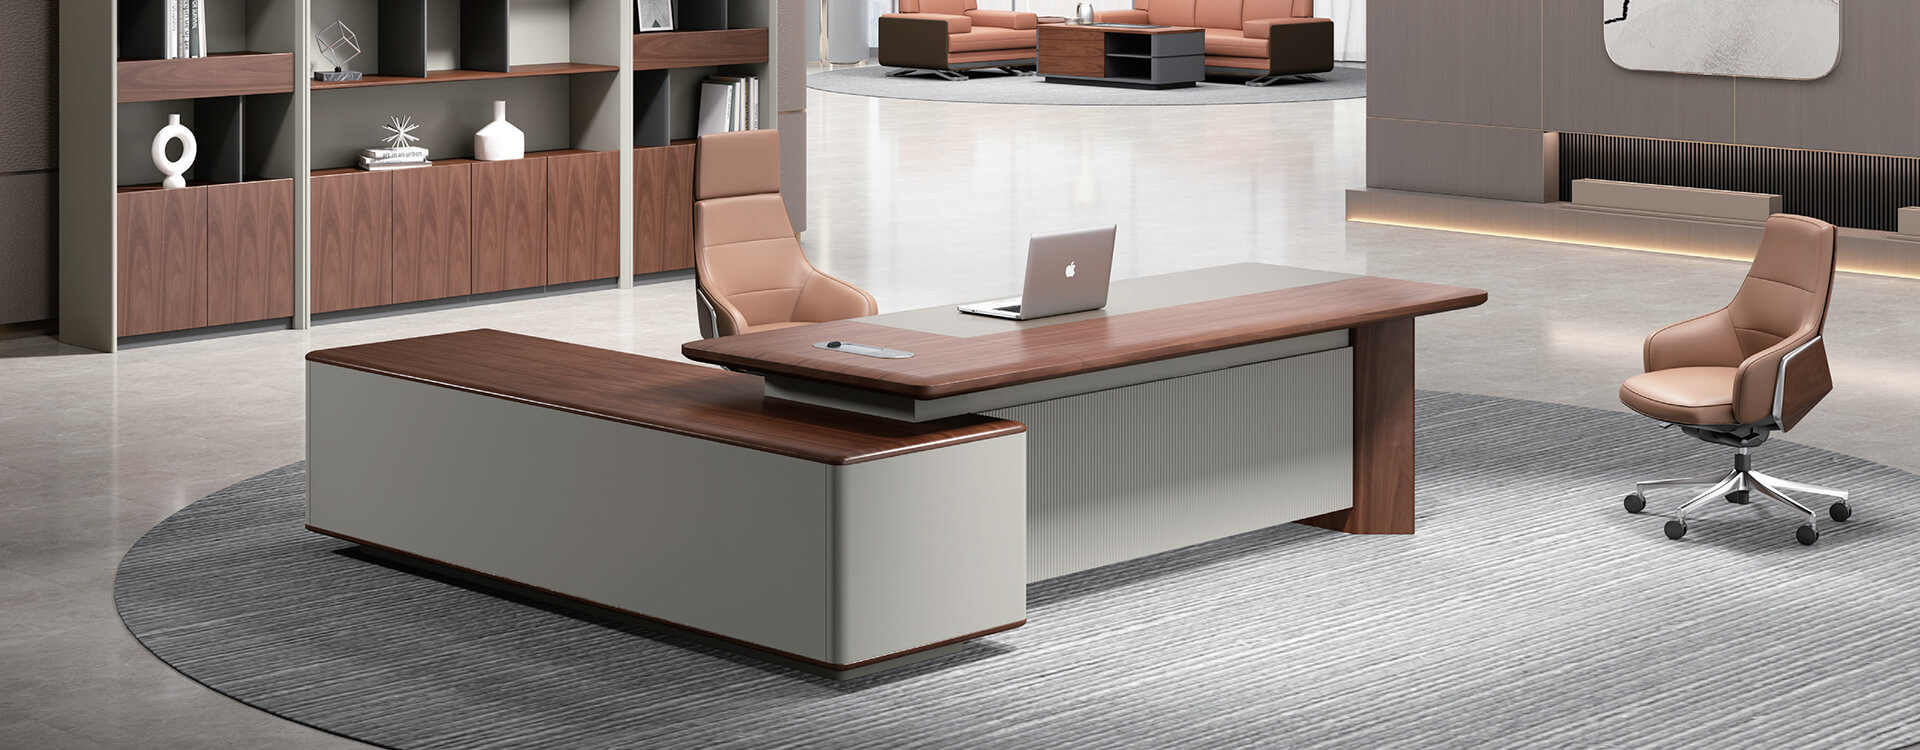 Mosca series modern design executive desk